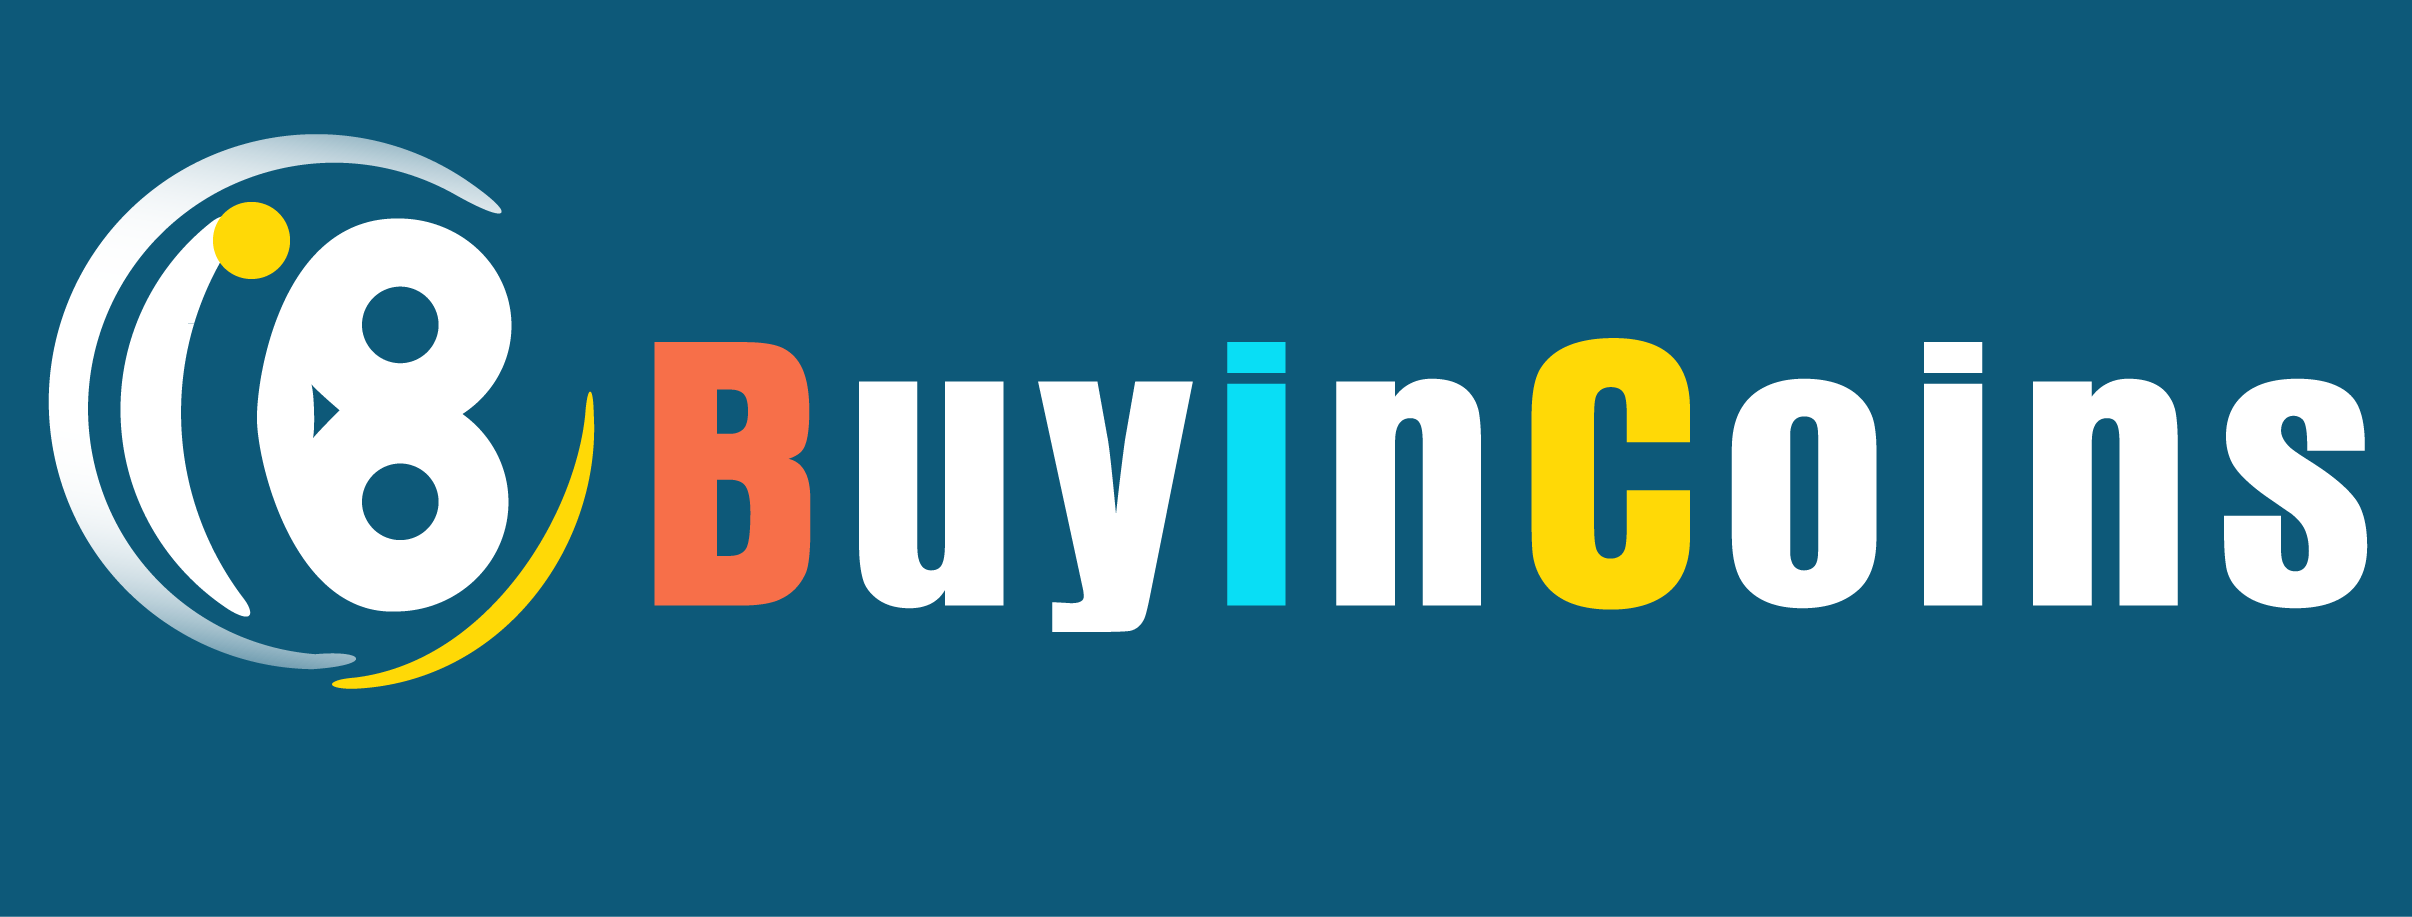 BuyInCoins logo large